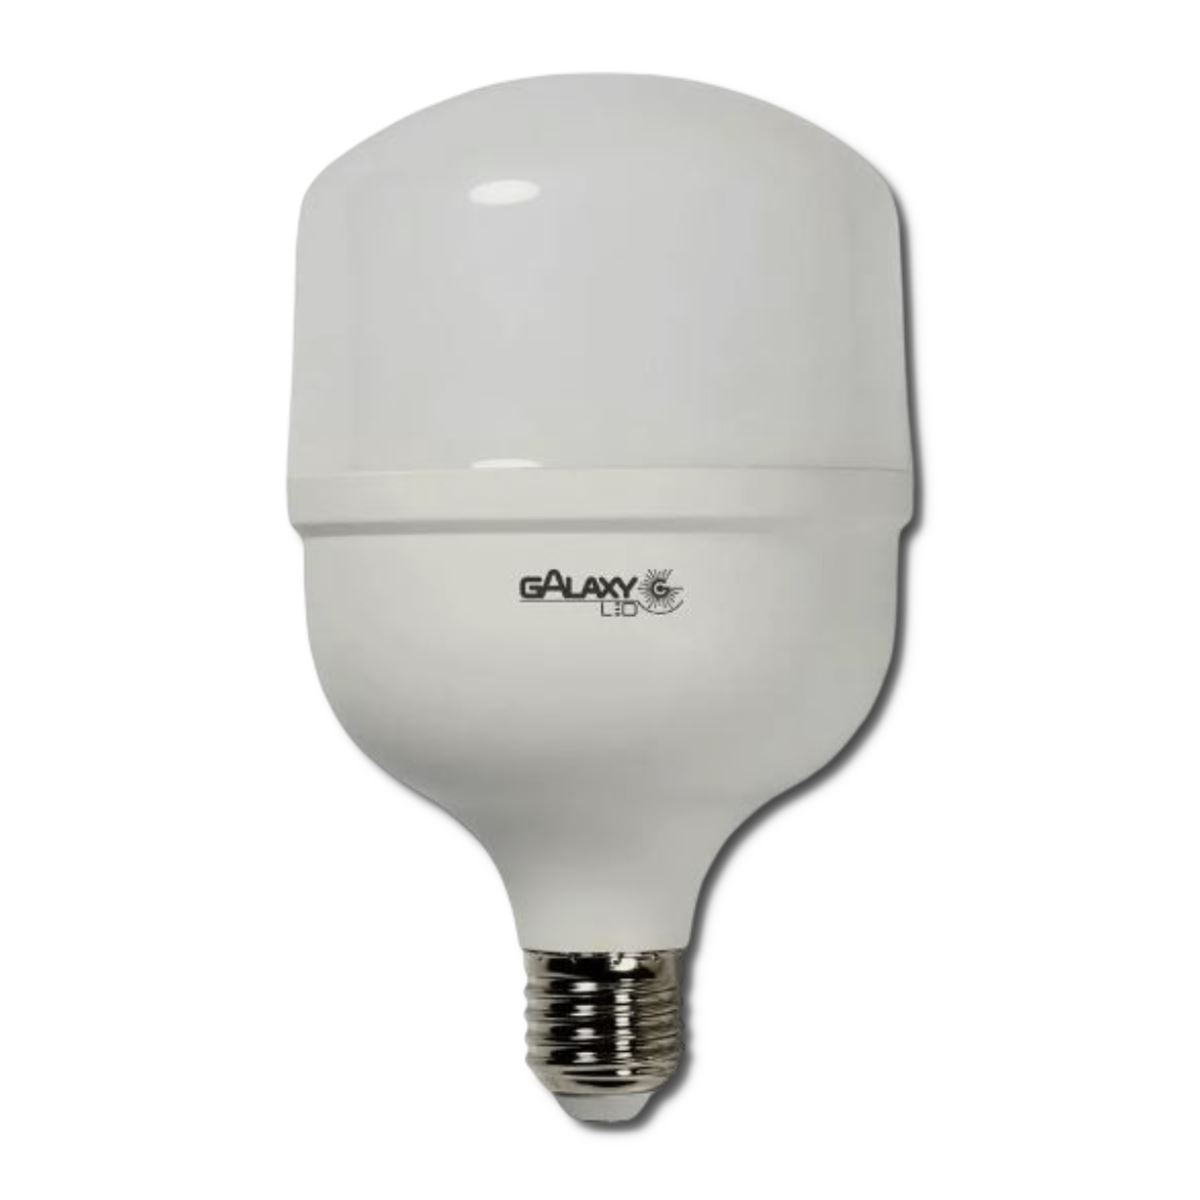 Lampada LED Bulbo T - 20W - Branco Frio 6500k - Bivolt - E27 - Galaxy LED